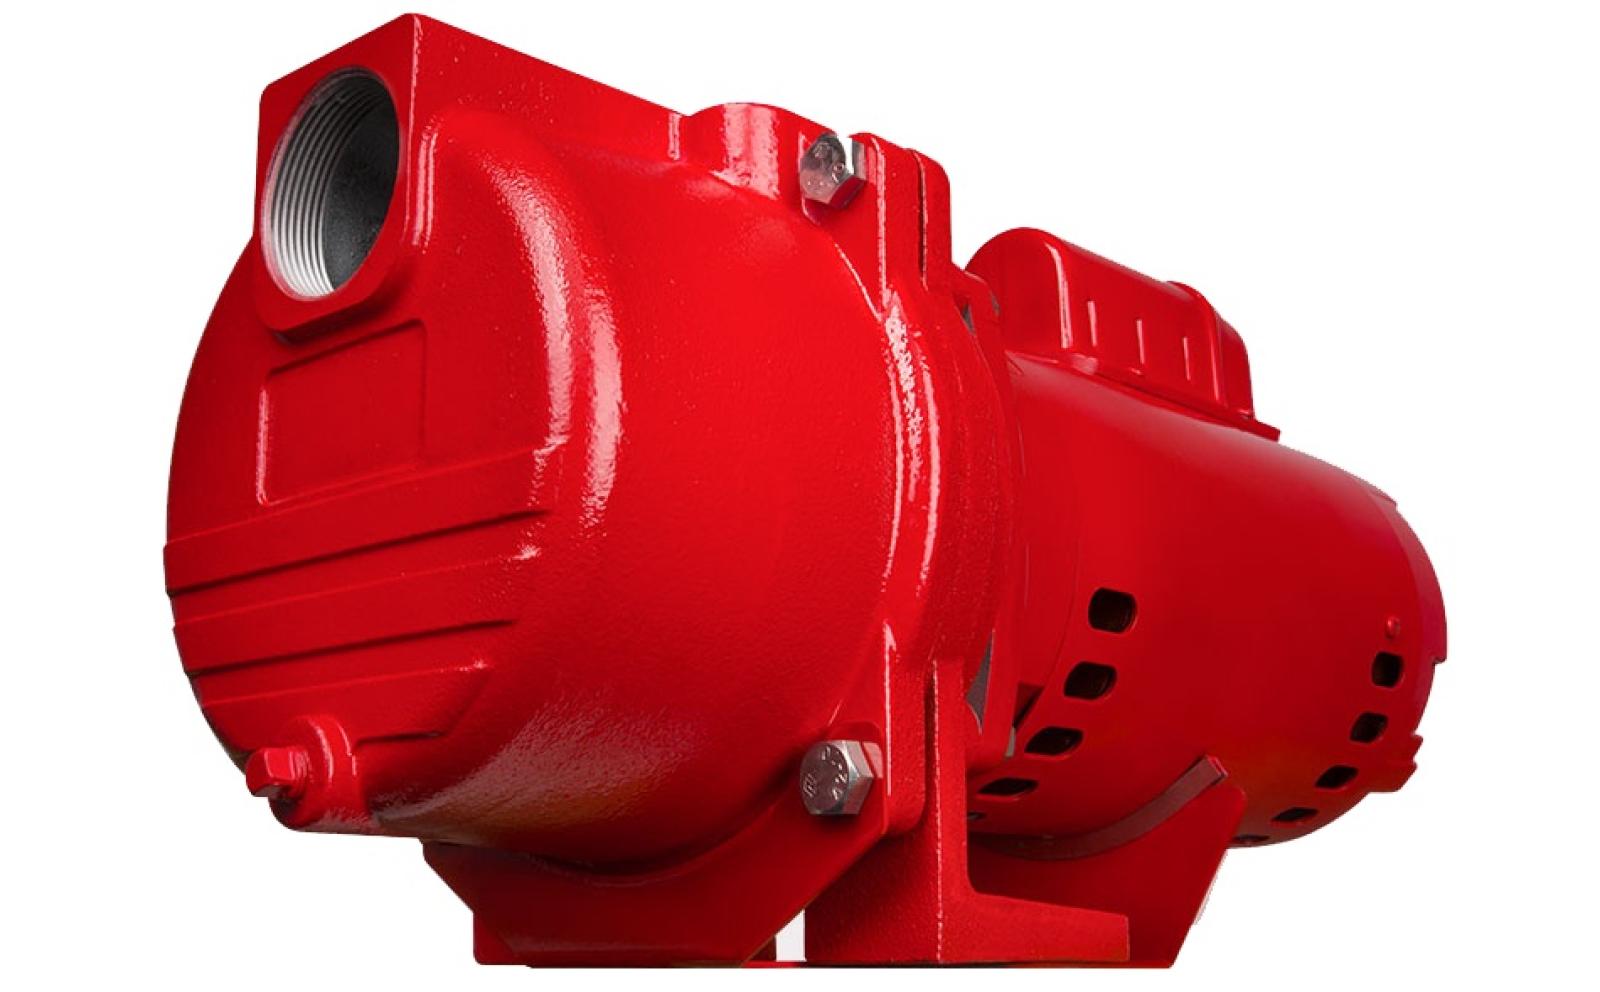 Red Lion Sprinkler Pump